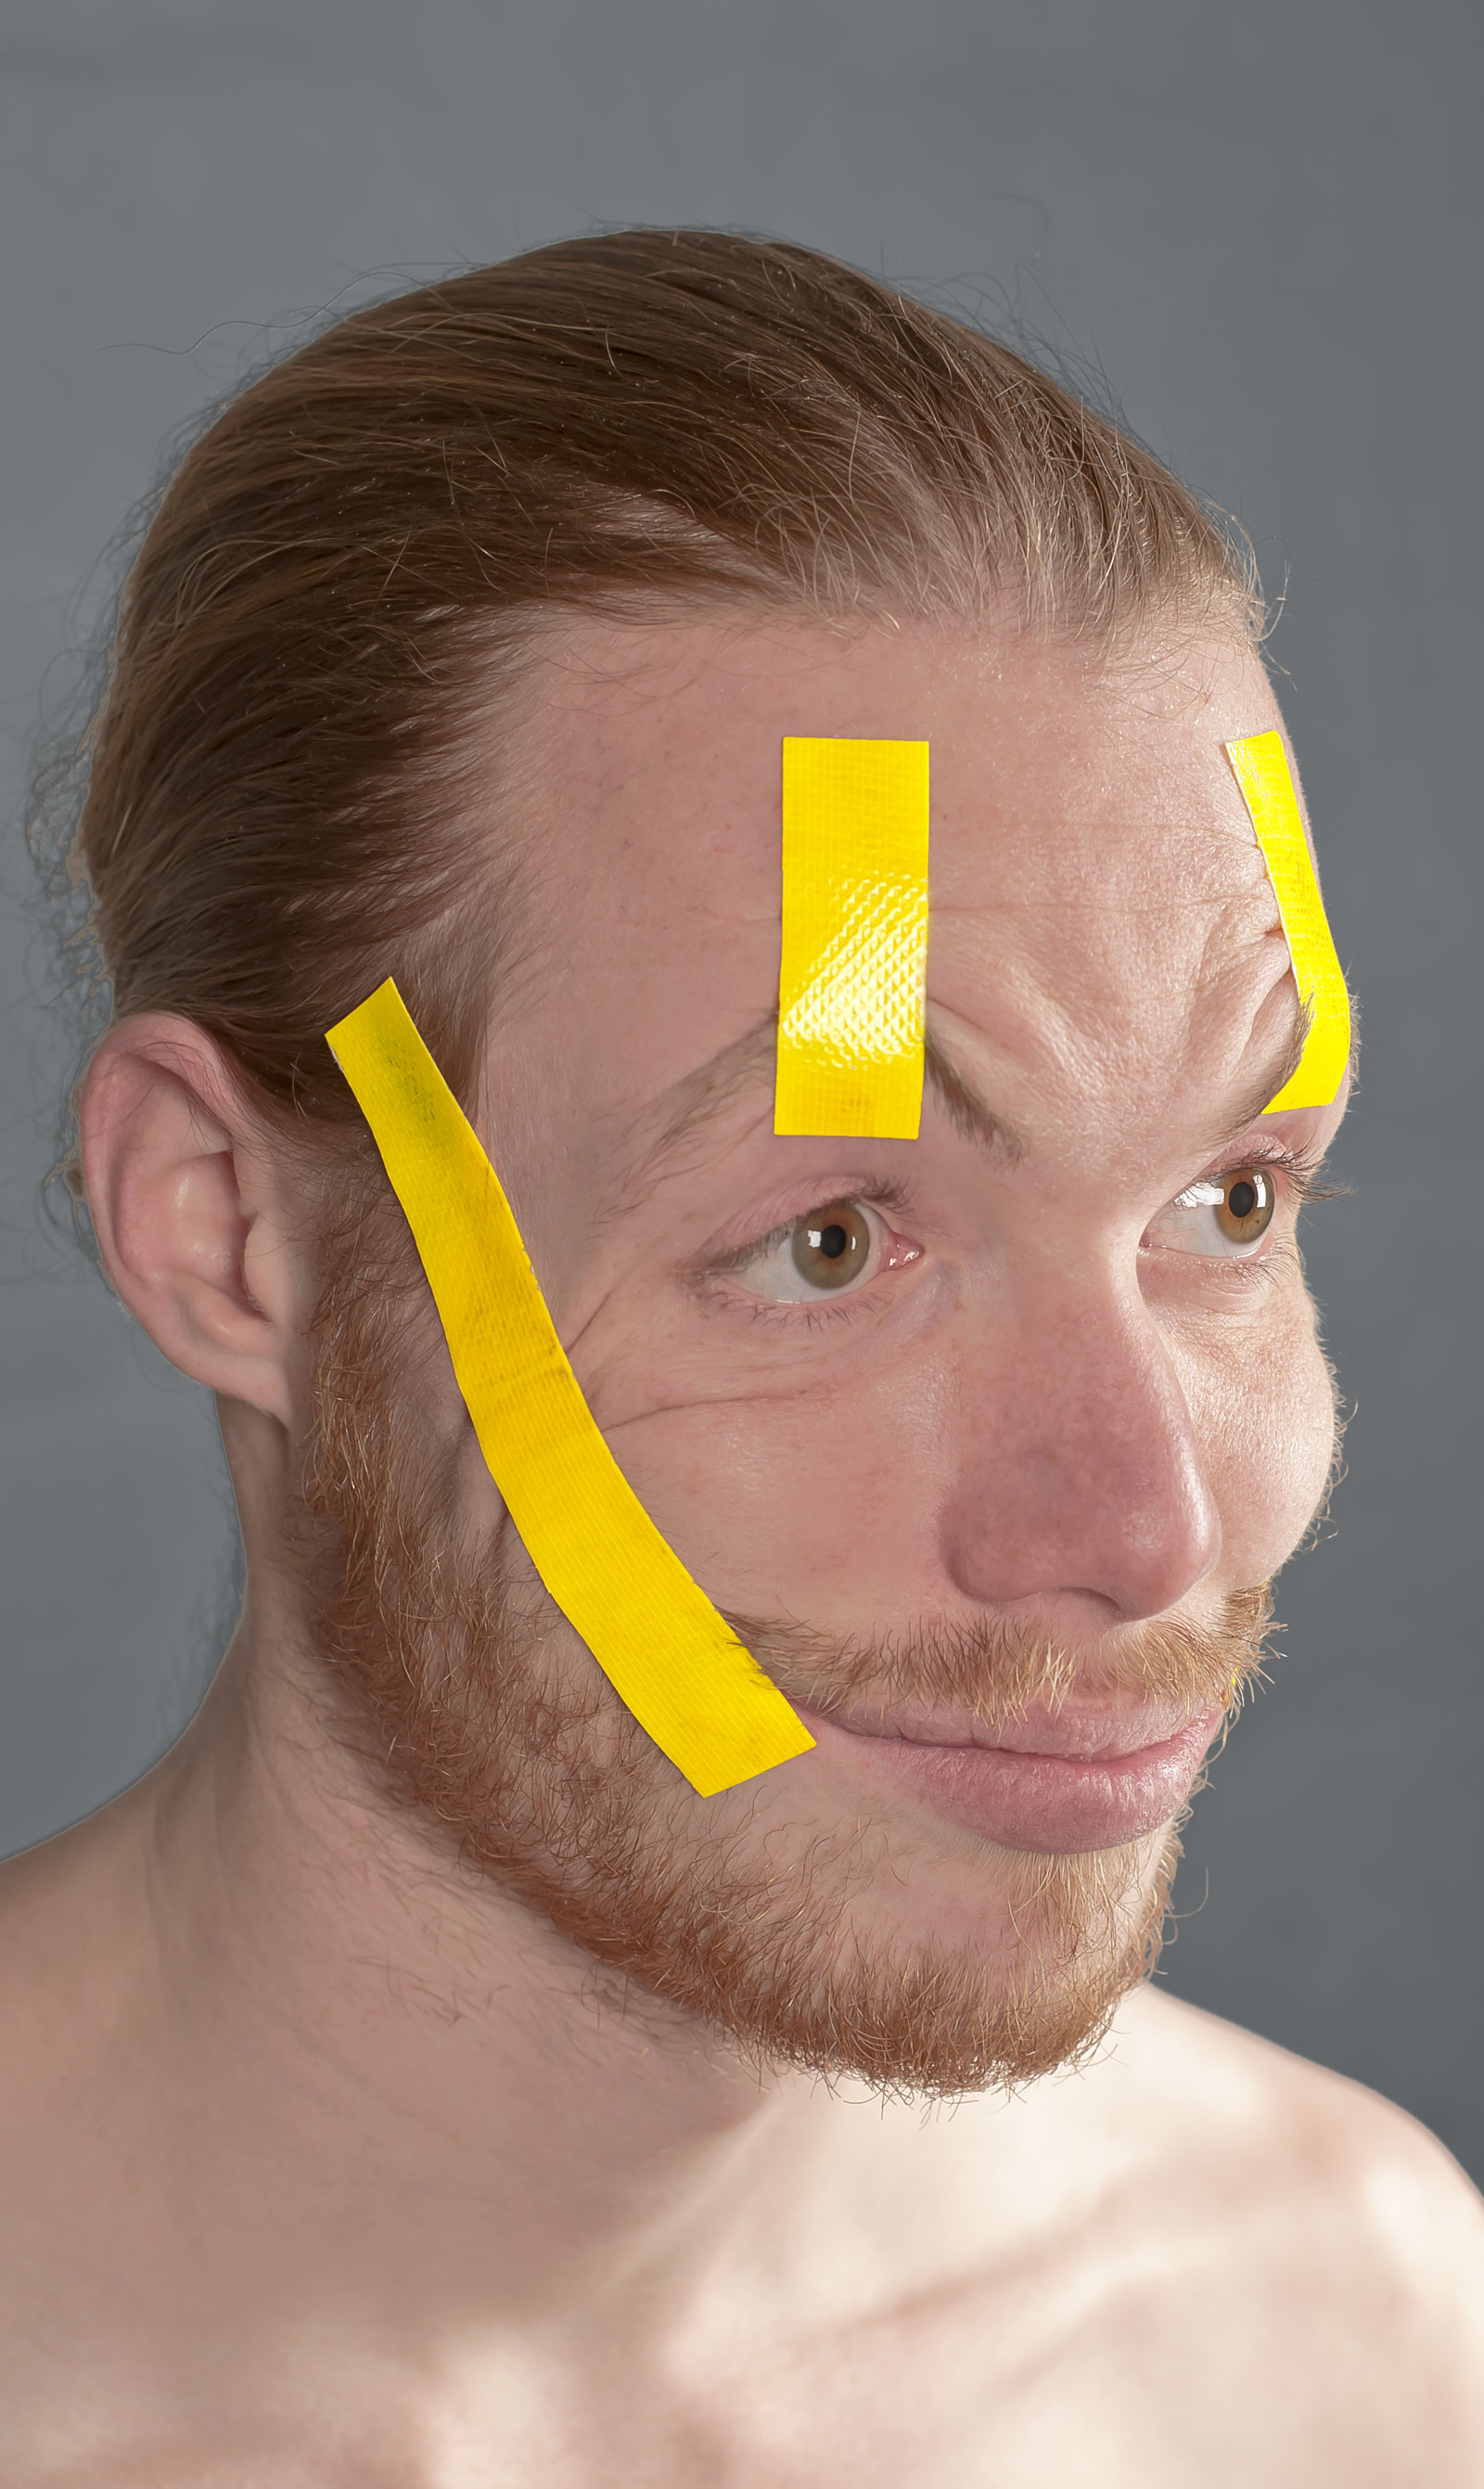 Portret met gele tape om gezicht in een lachende houding te fixeren